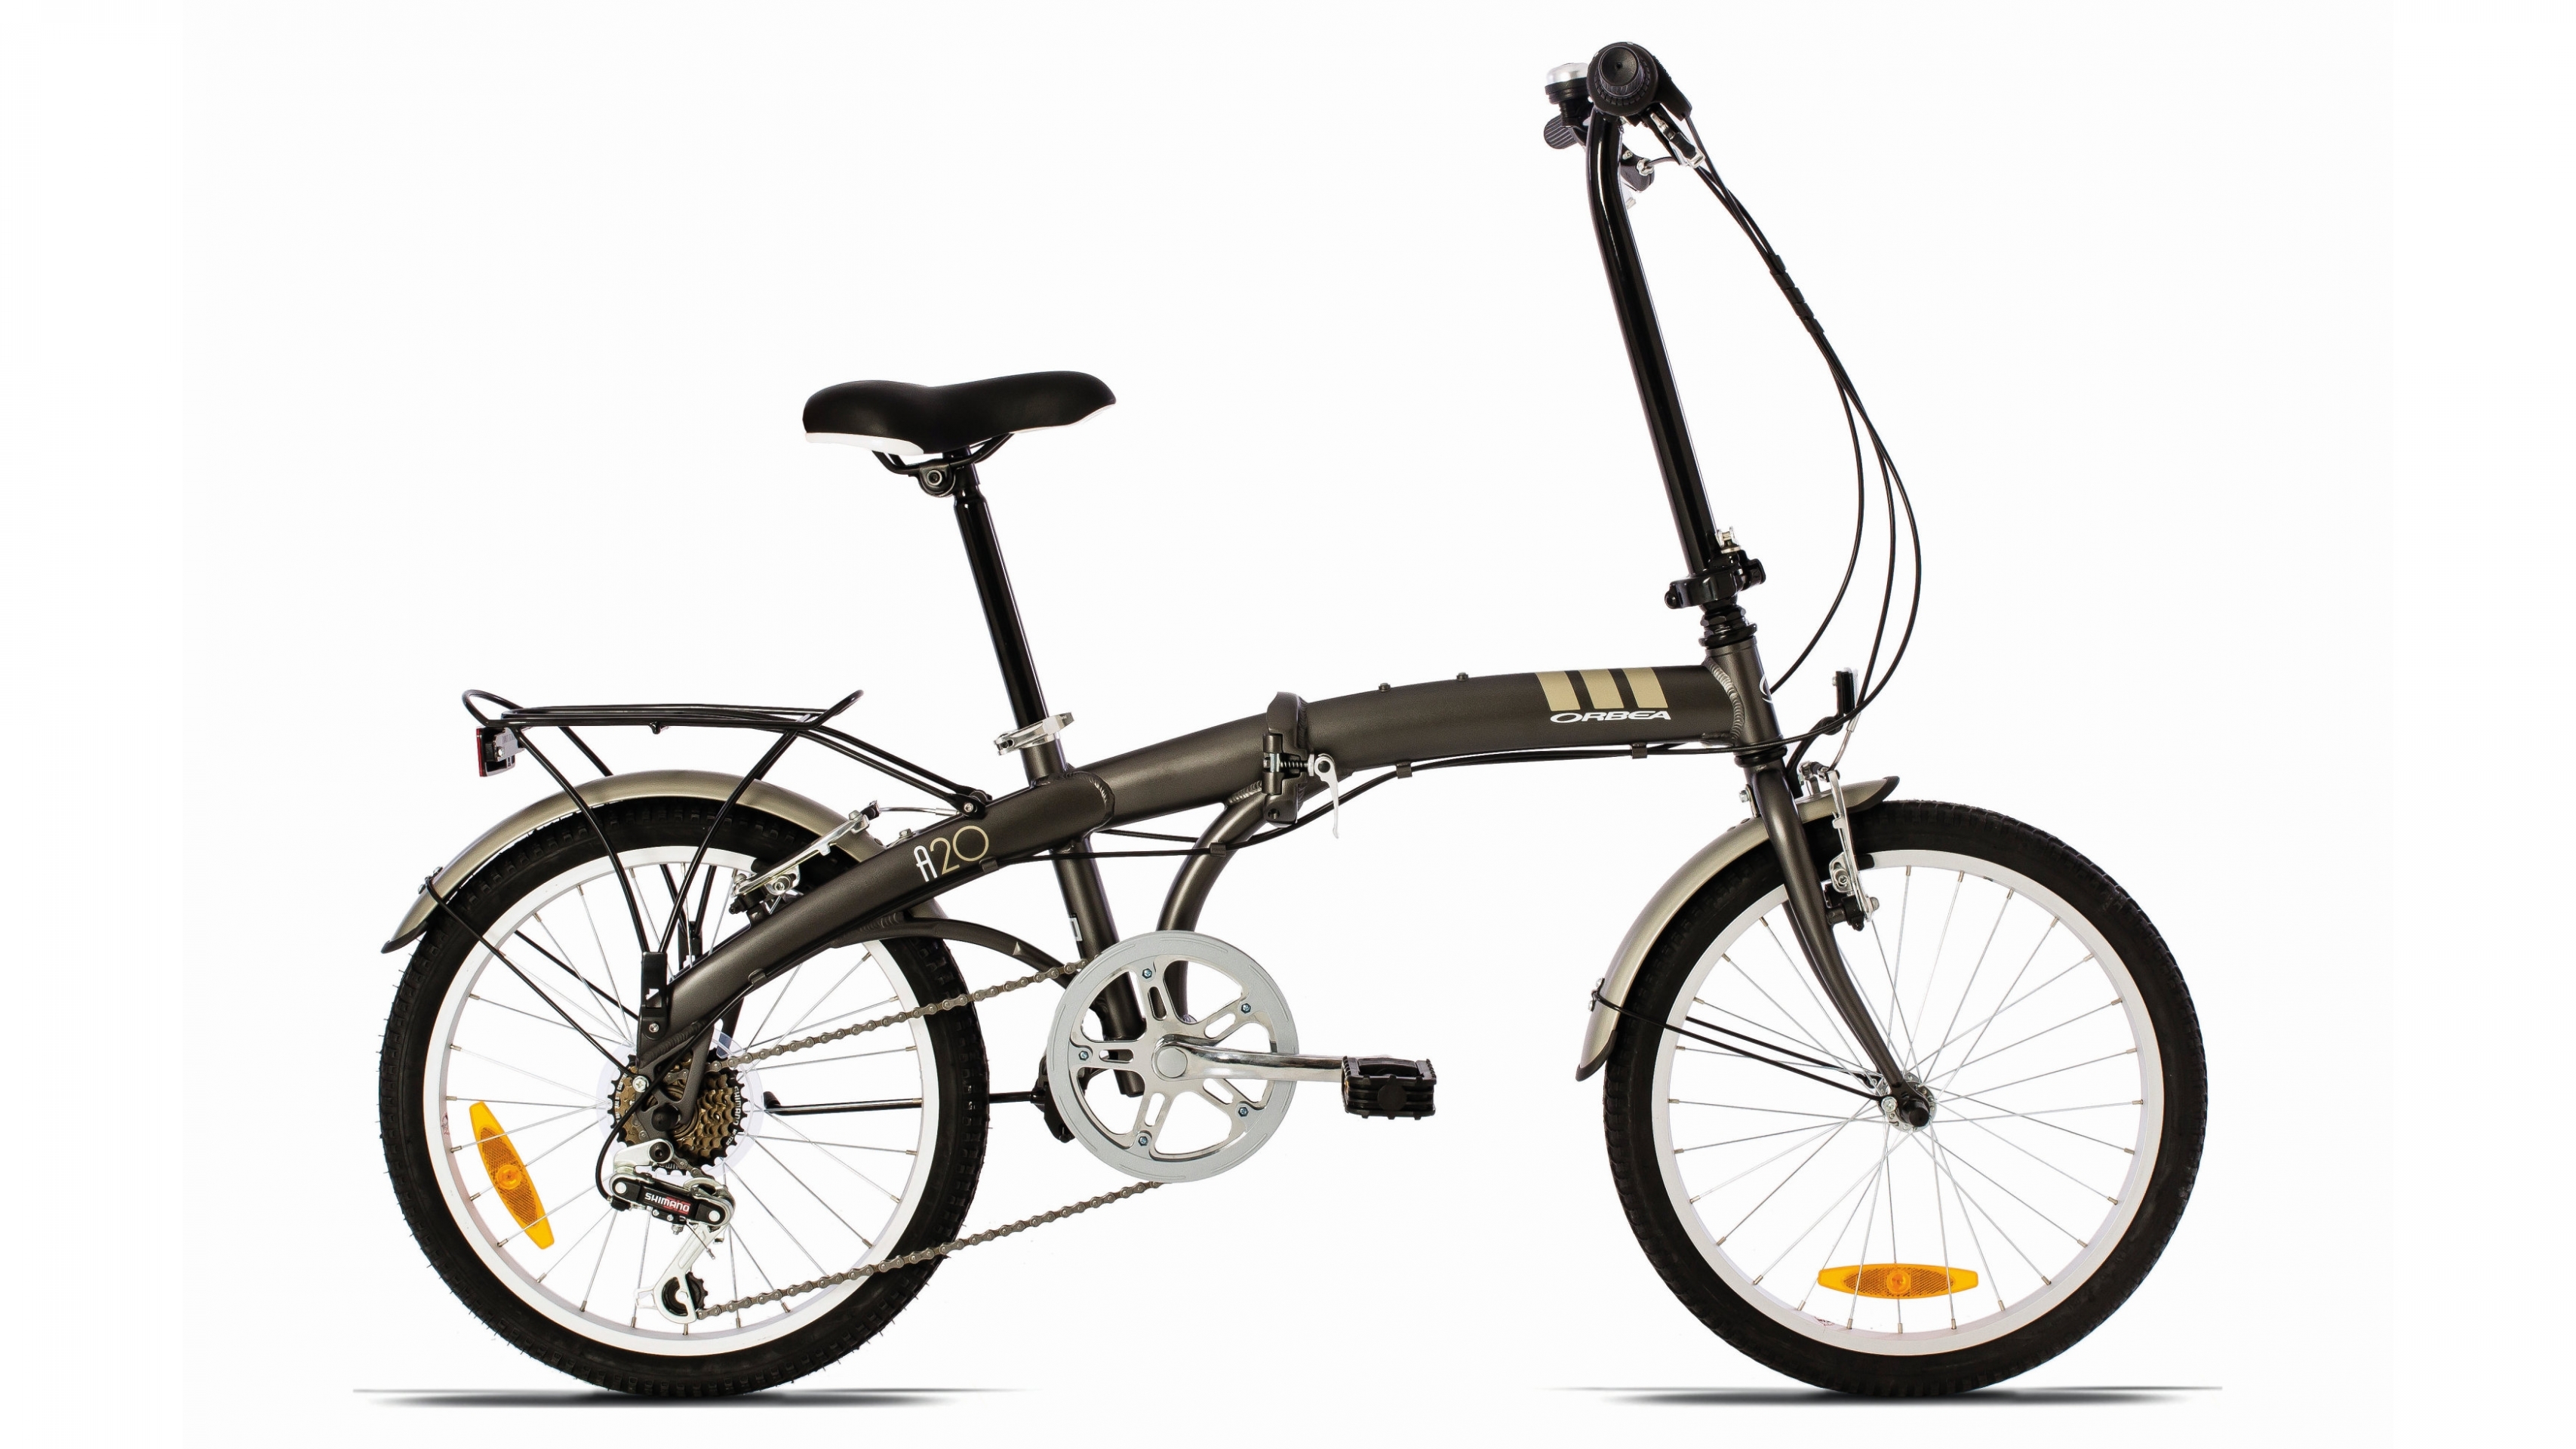 Велосипед купить в москве взрослый мужской недорого. Городской велосипед Orbea Folding a20. Велосипед Orbea 20. Велосипед складной Vincent City line Folding. Велосипед Пегасус велосипед (складной) Pegasus easy Step 3 (2015).